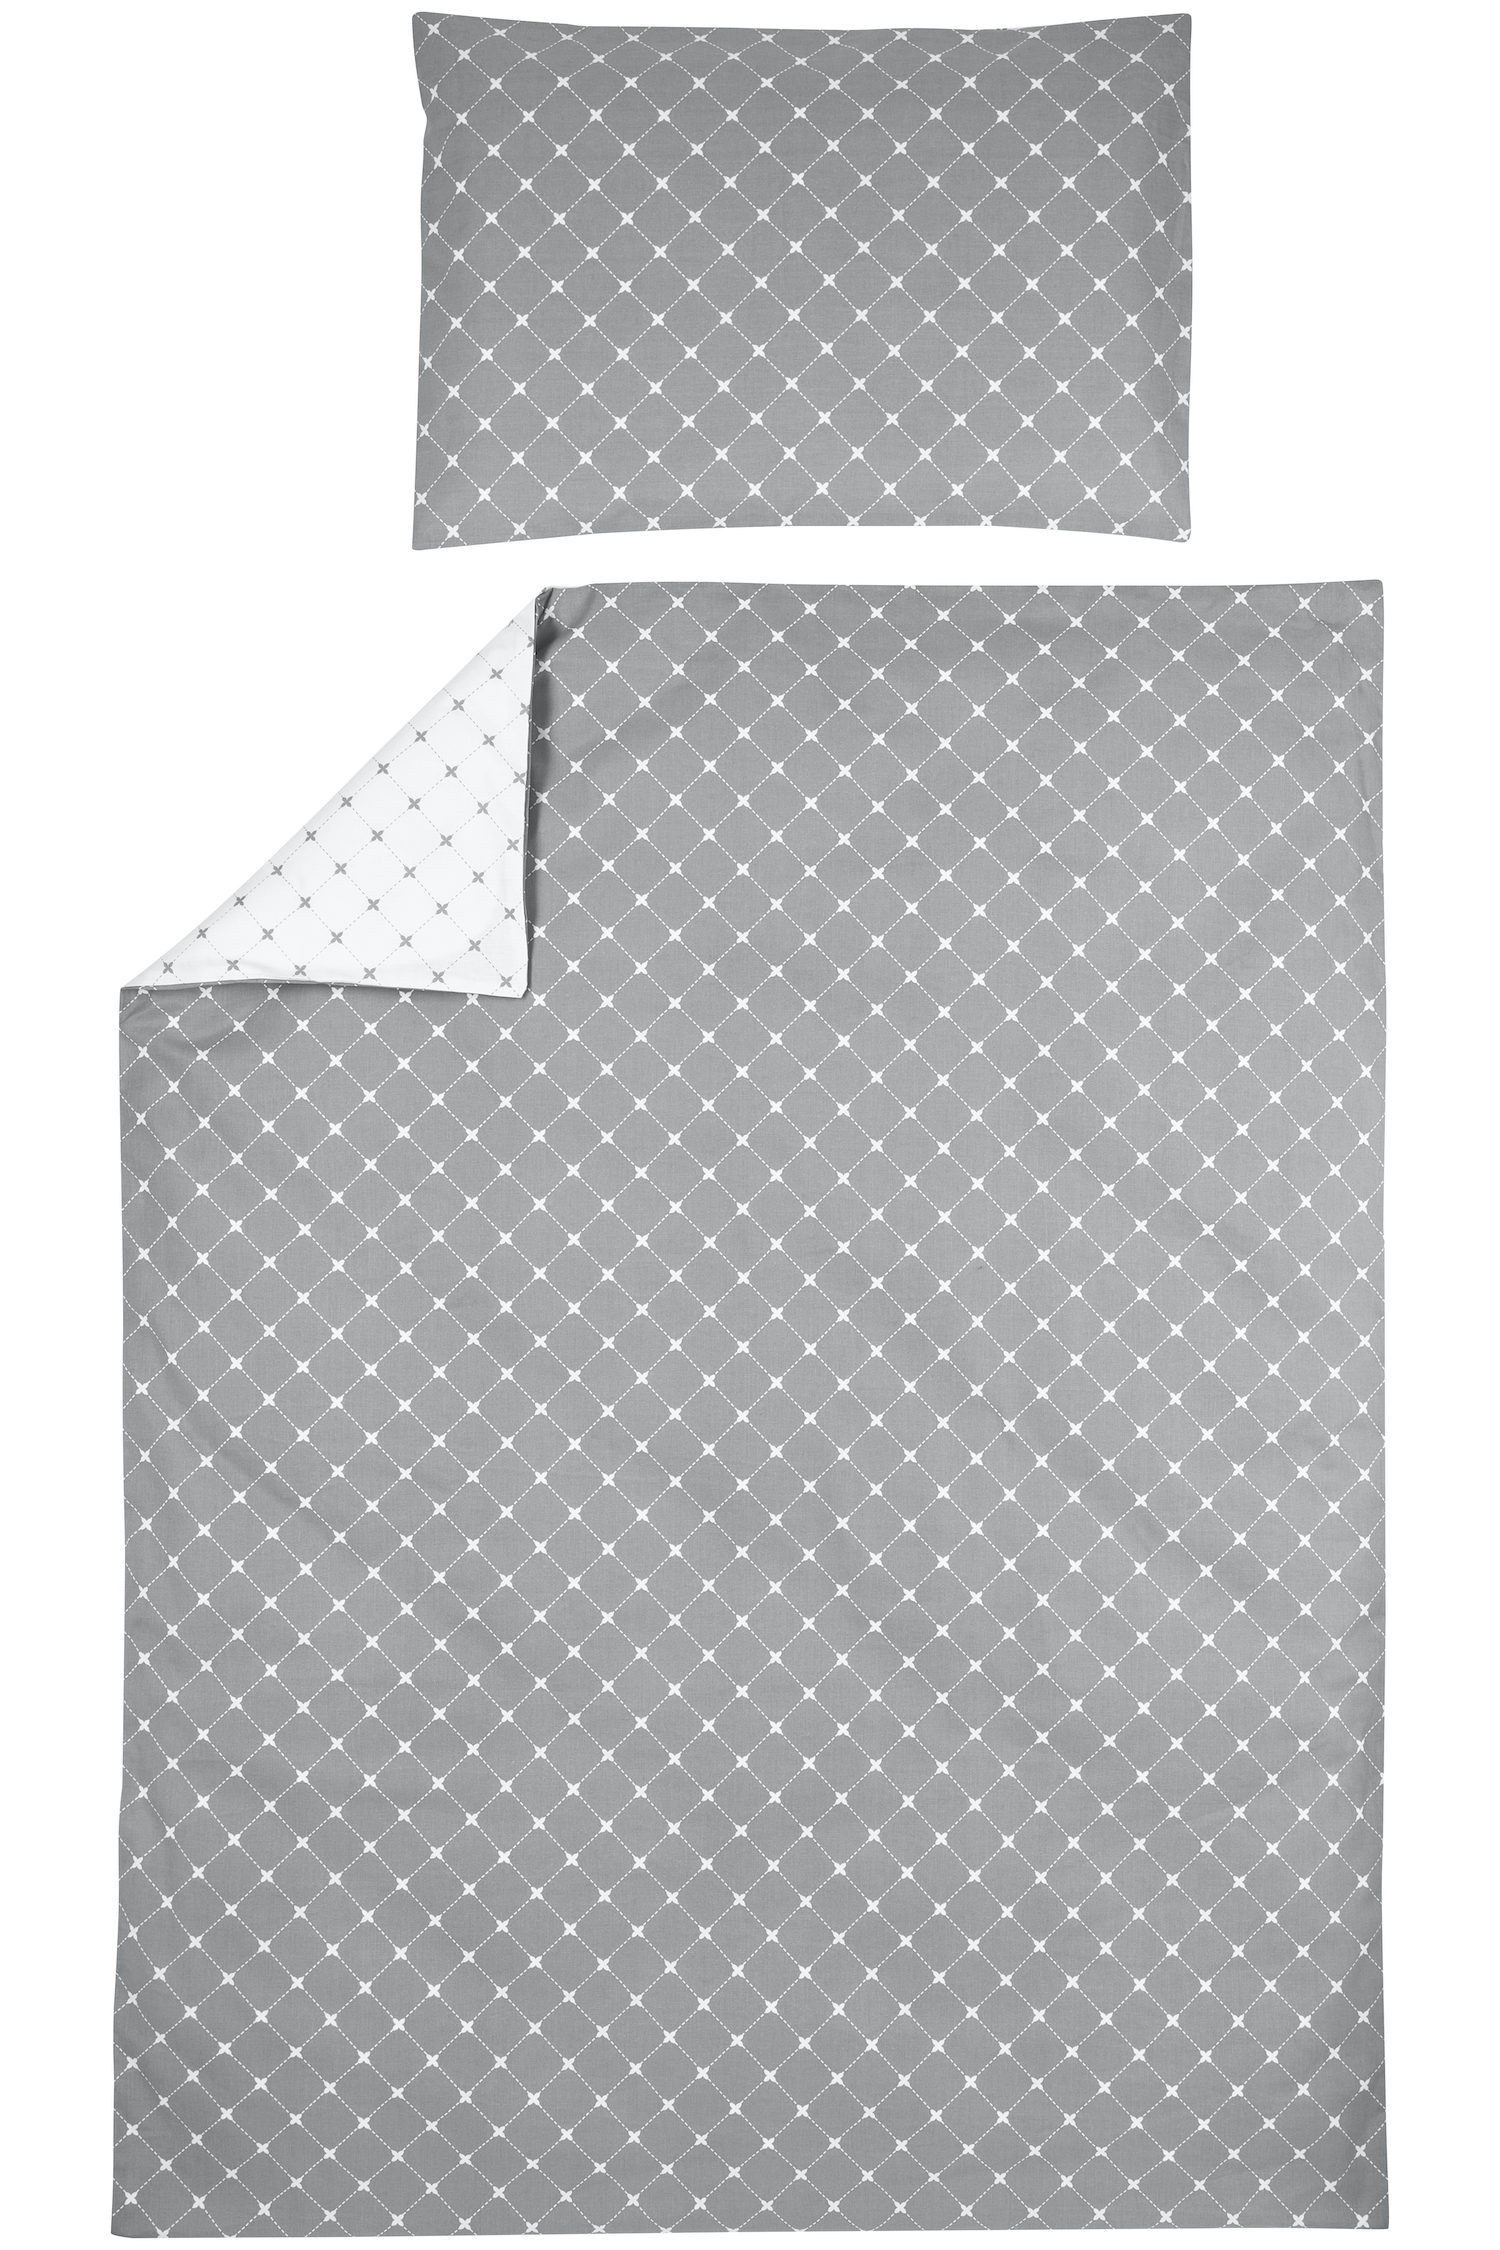 Duvet cover cot bed Louis - grey - 100x135cm